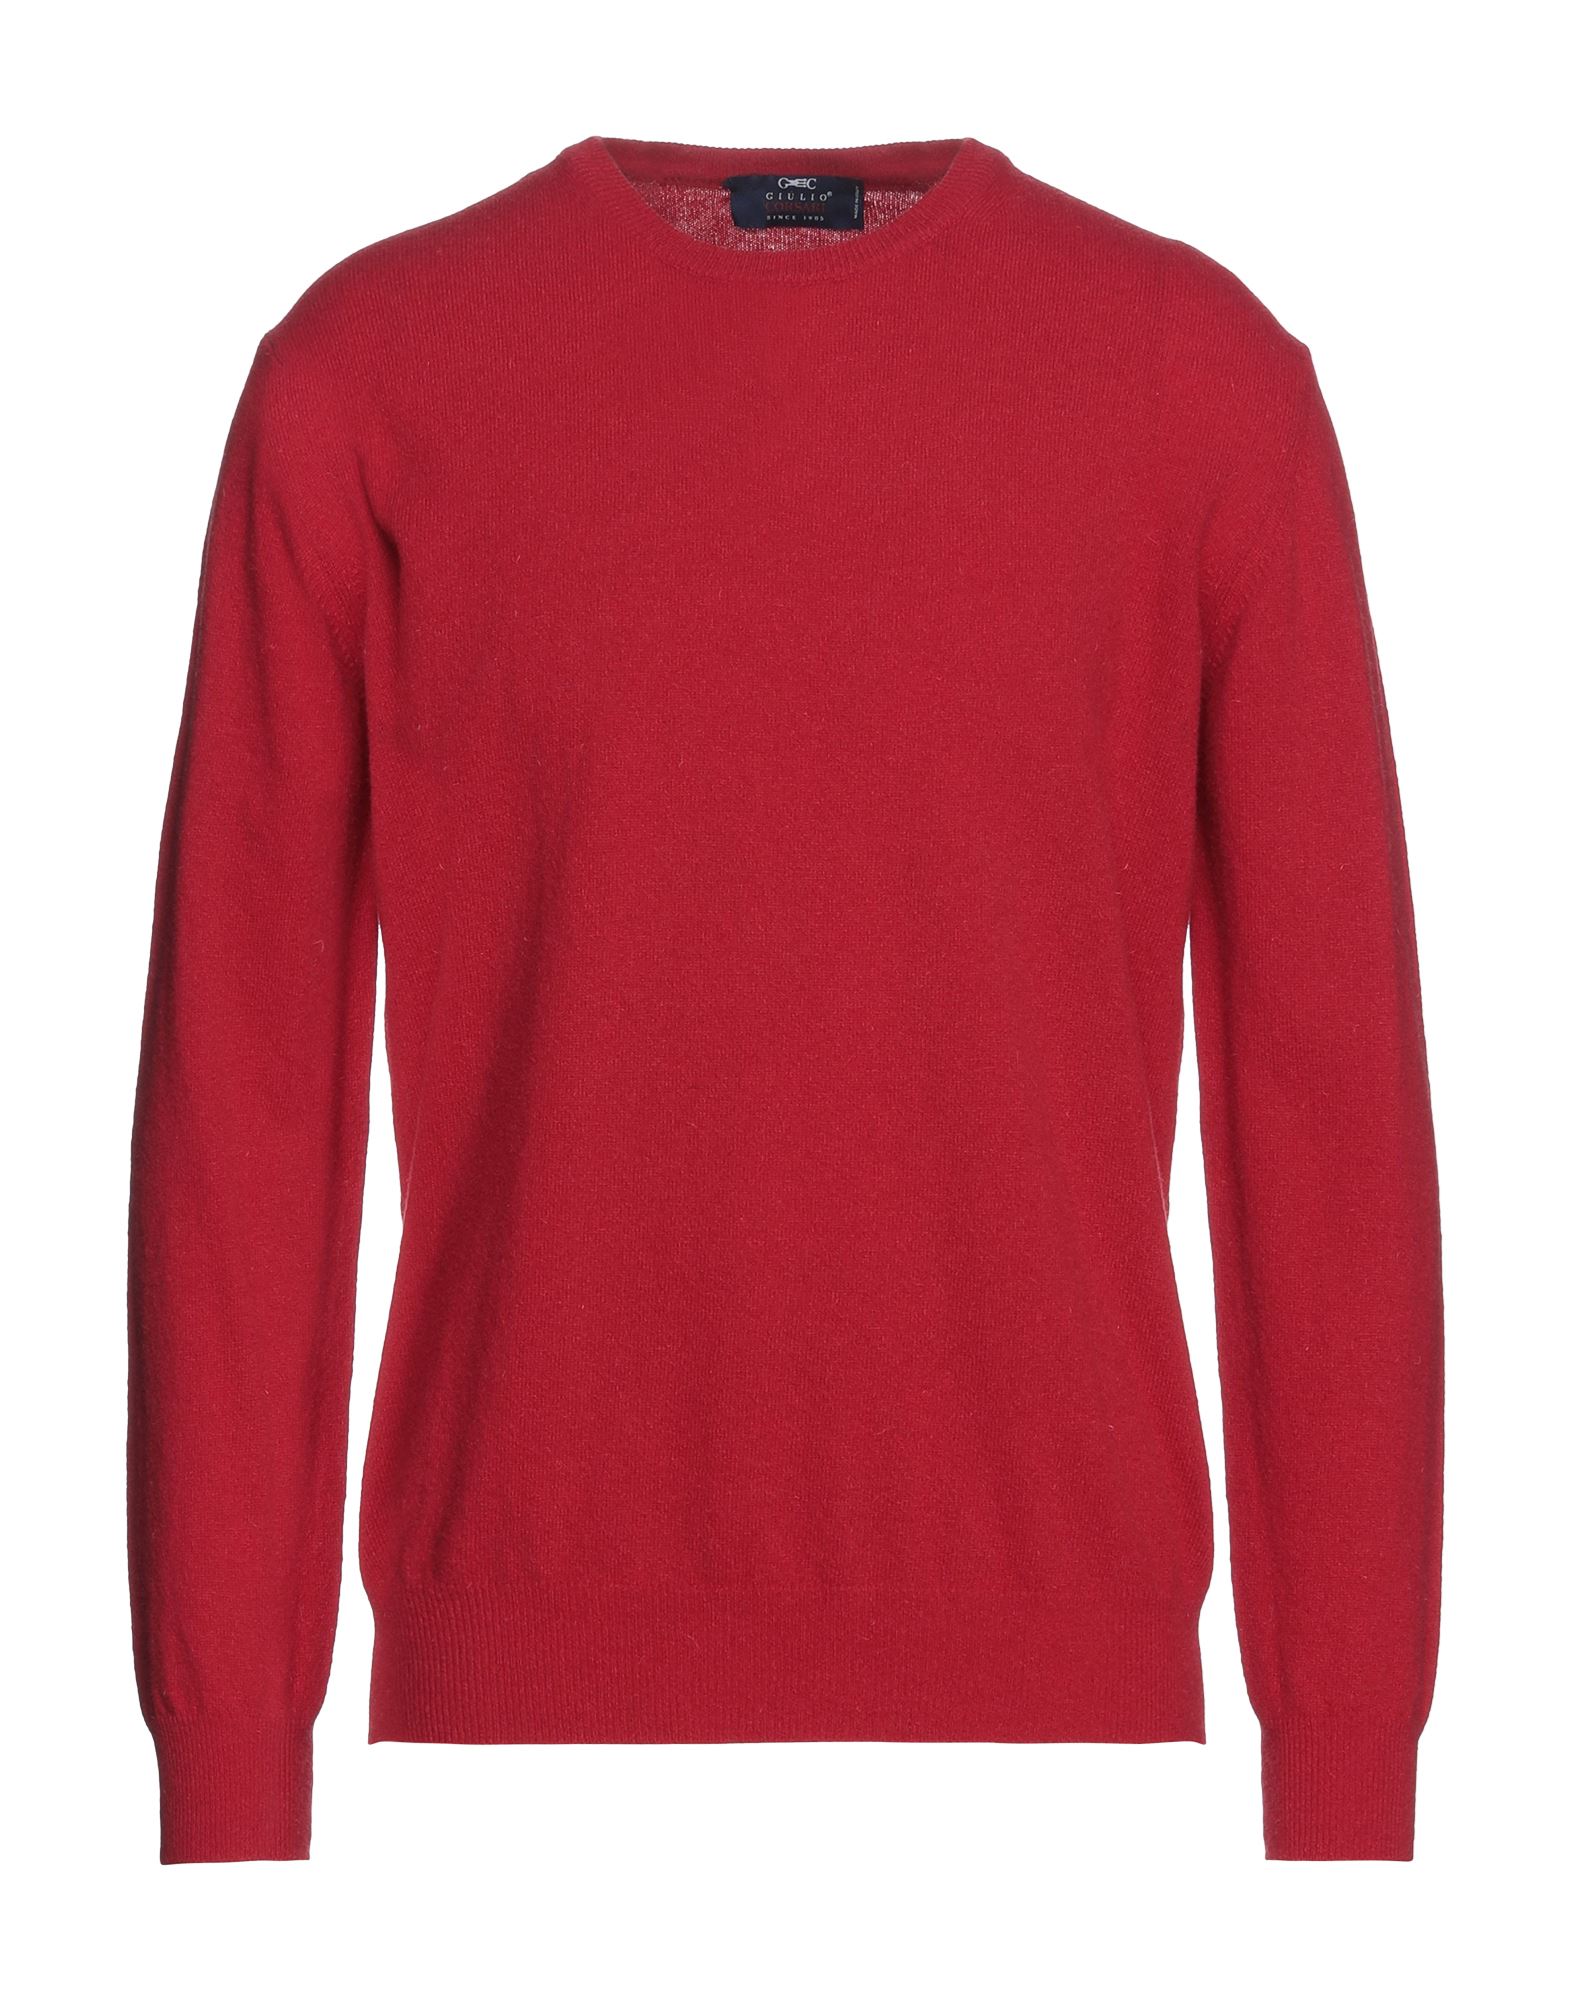 Giulio Corsari Sweaters In Red